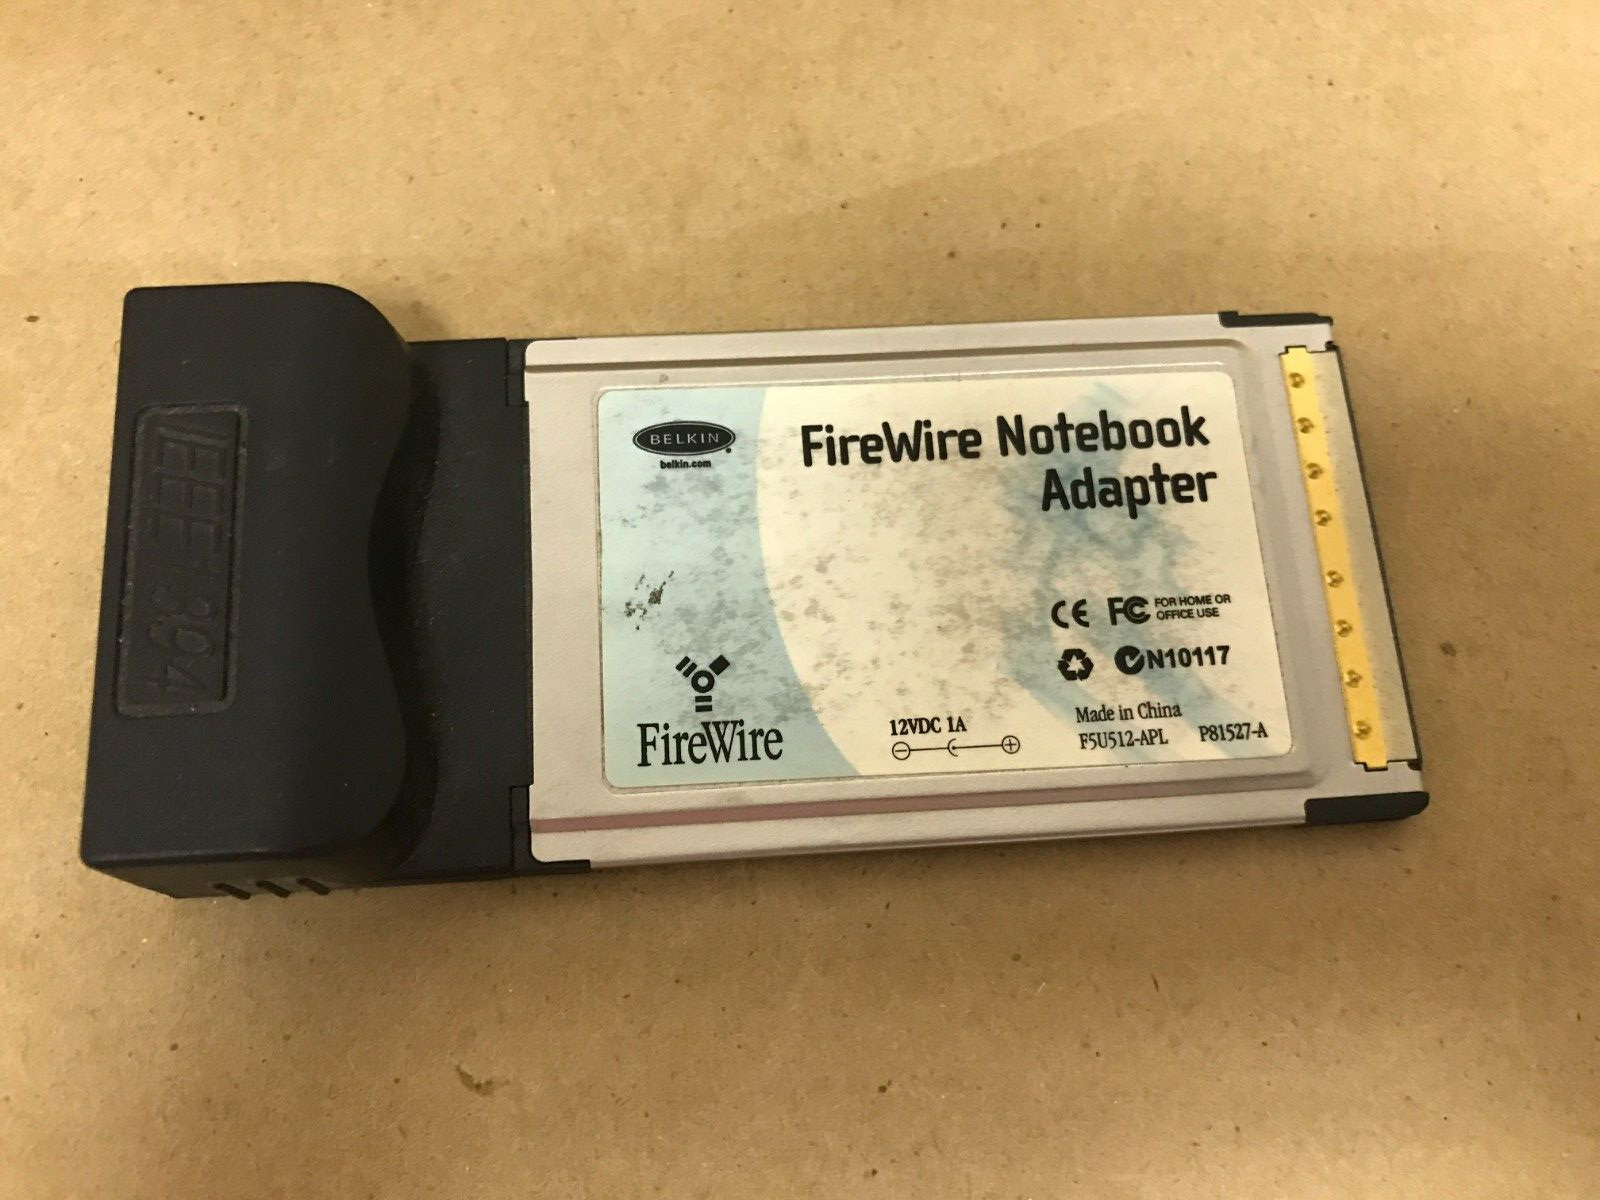 Belkin FireWire PCMCIA Notebook Adapter F5U512-APL P81527-A L1-22